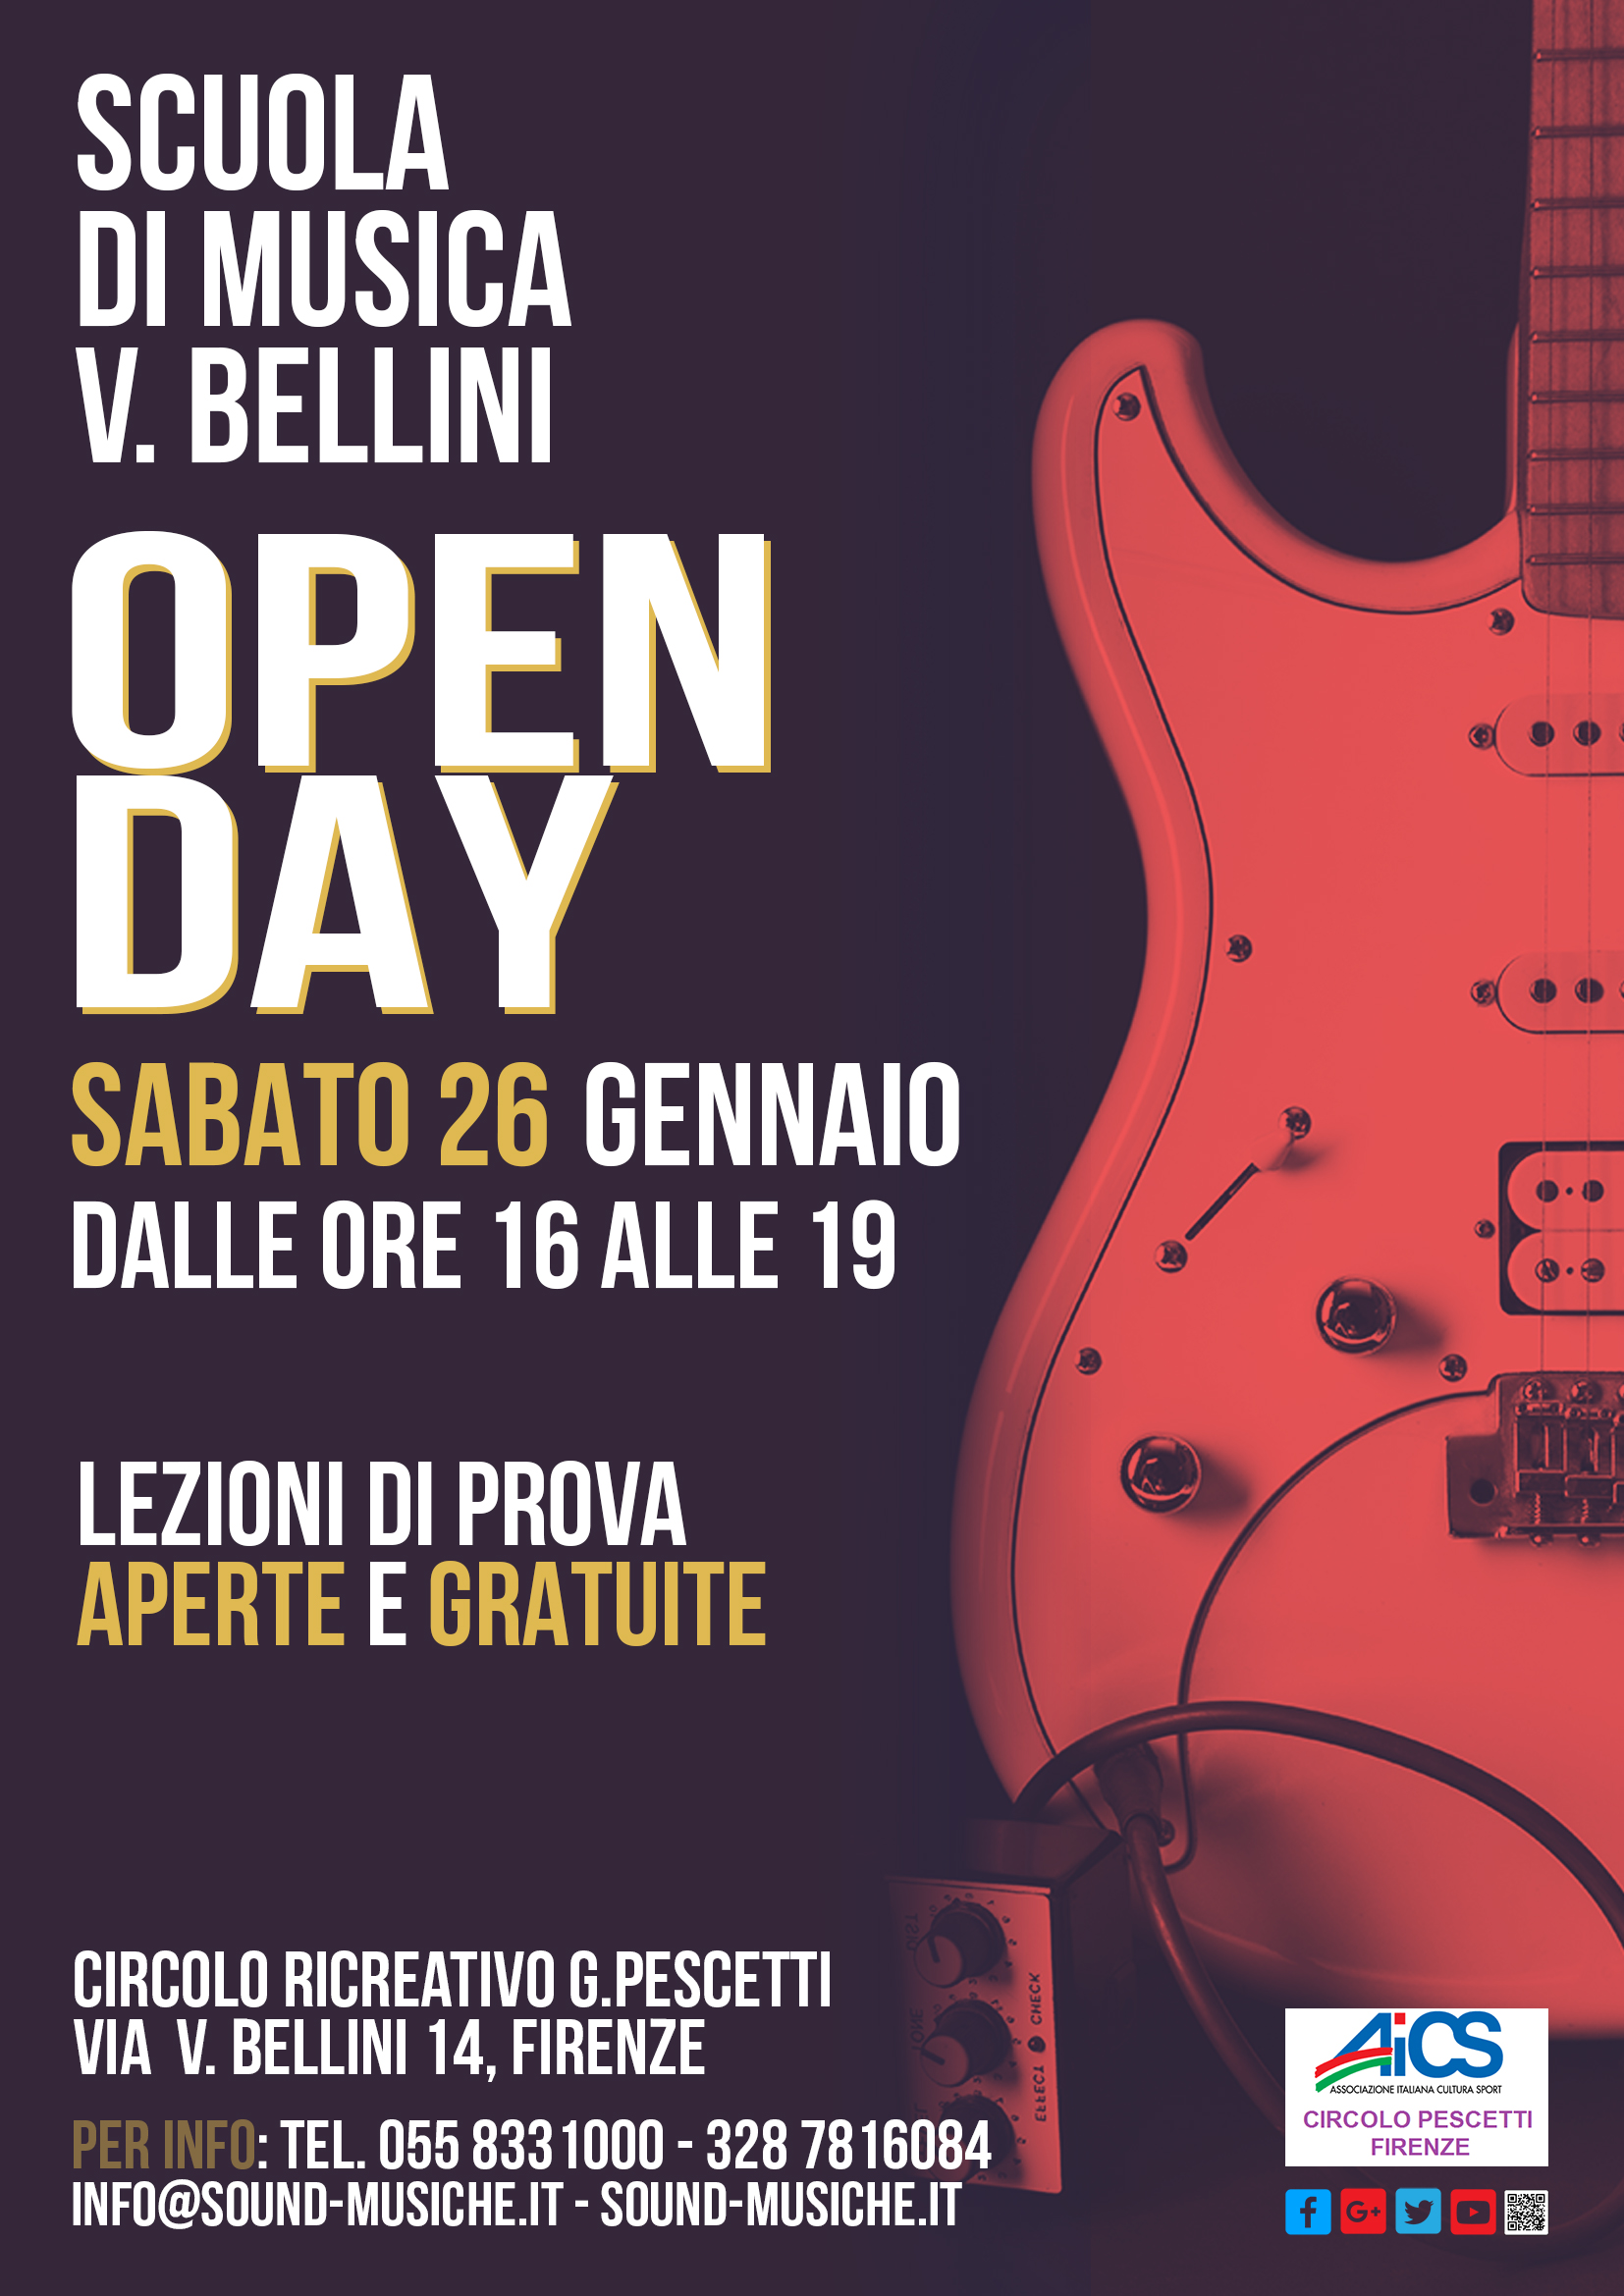 Open Day scuola Di Musica Bellini Sabato 26 Gennaio 2019 ore 16